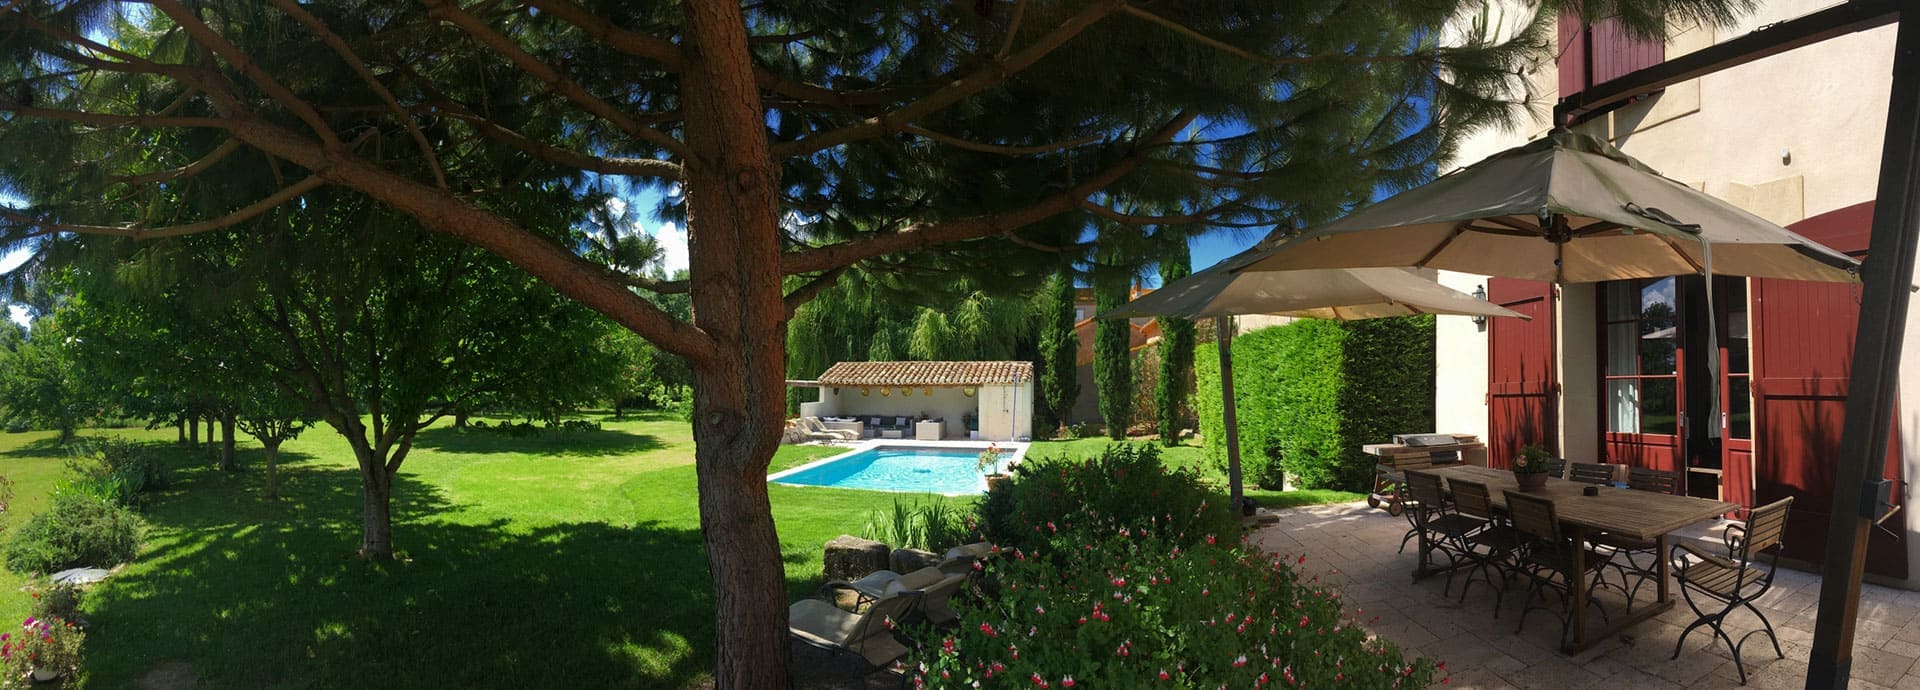 Vista de la terraza y de la piscina de la posada Silène dentro de la Finca de la Vernède, alquiler de habitaciones para huéspedes en el departamento de Hérault